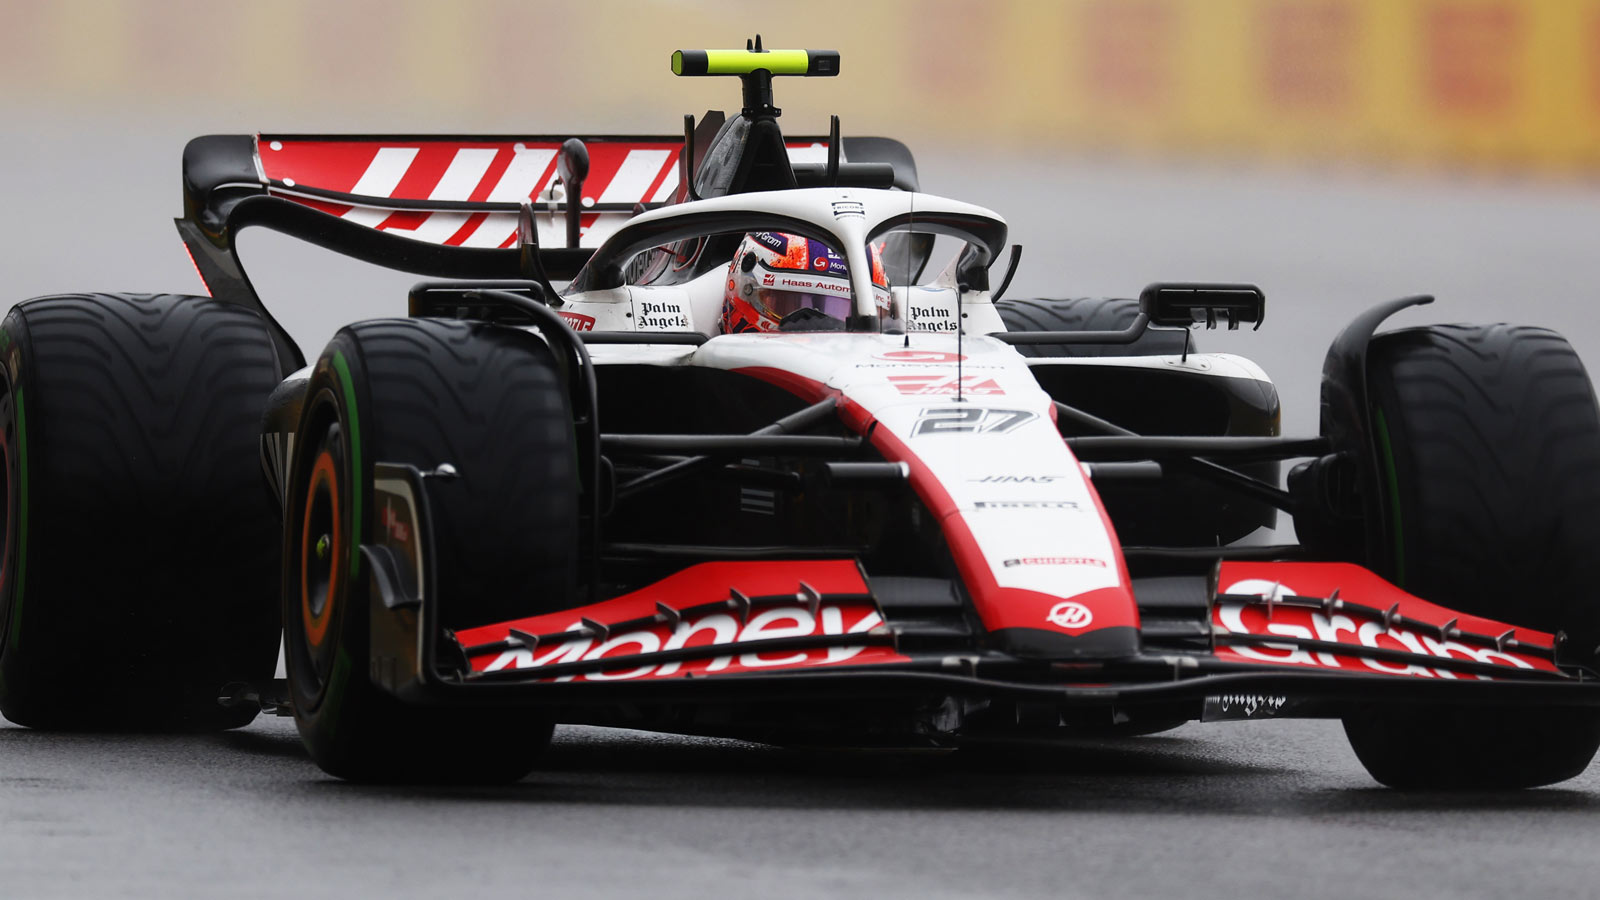 Formel 1 Nico Hülkenberg nach Regelverstoß zurückversetzt